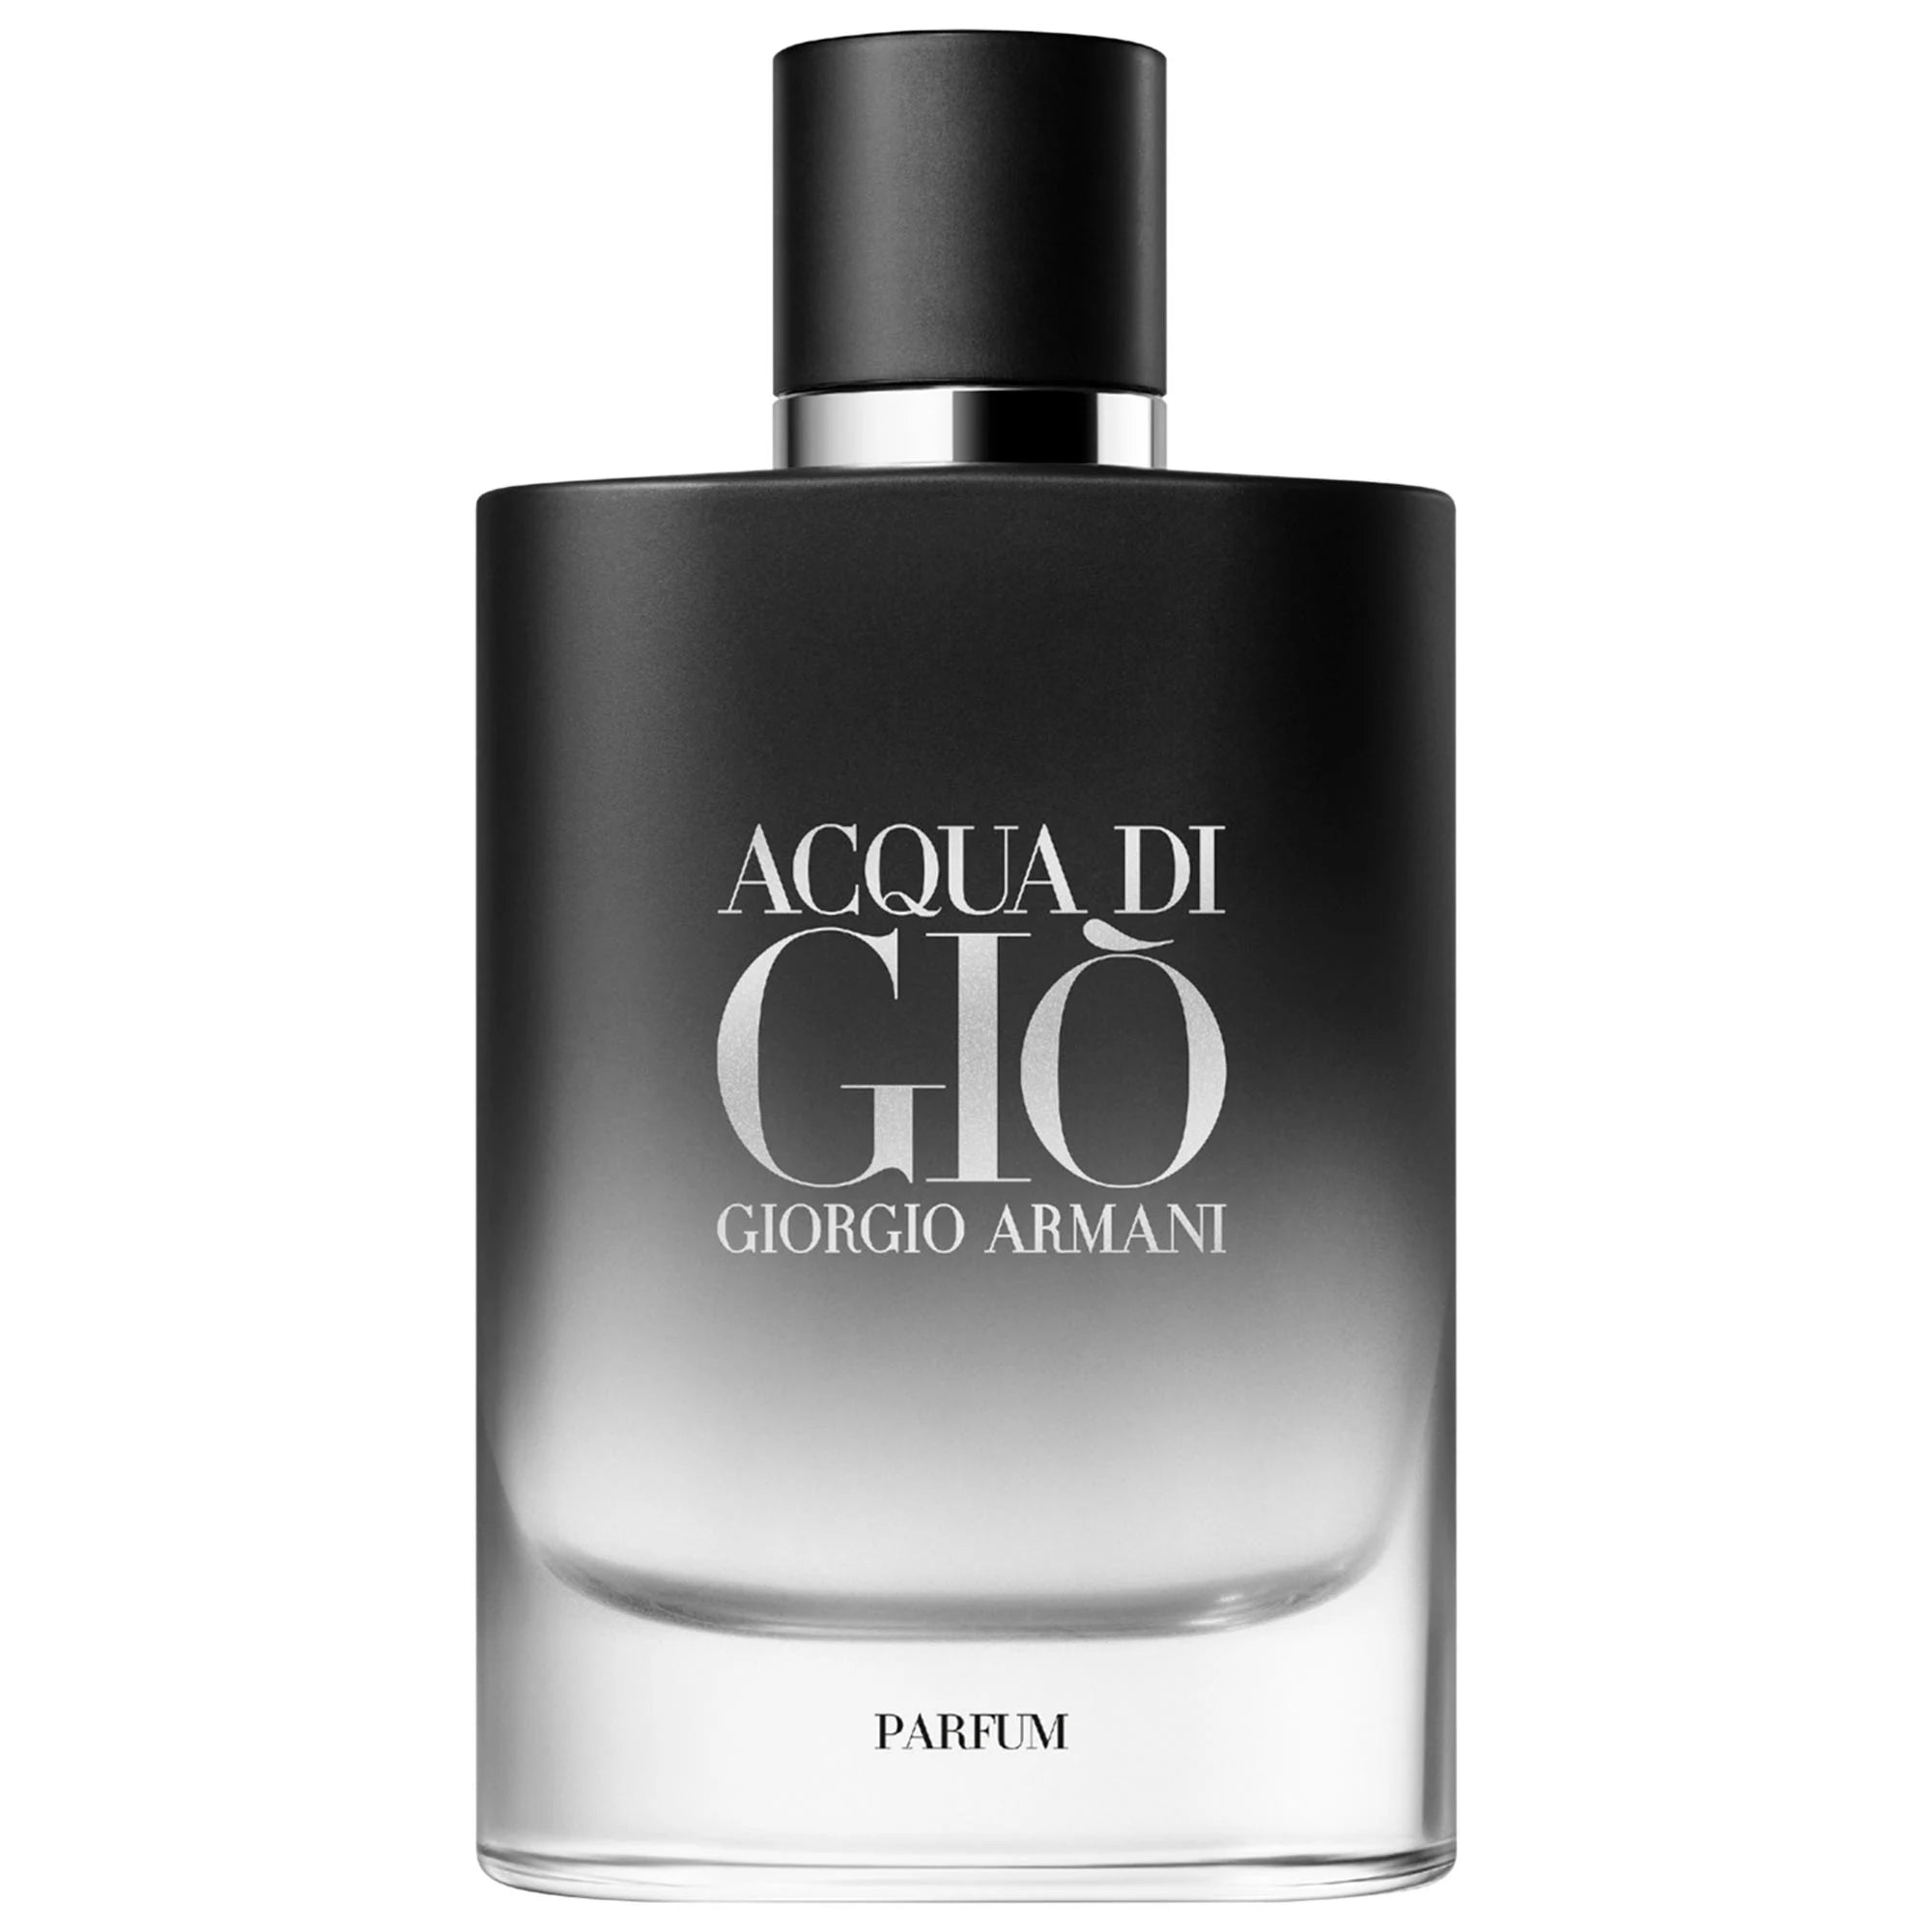 Perfume Giorgio Armani Acqua Di Gio Parfum (M) / 125 ml - 3614273907521- Prive Perfumes Honduras